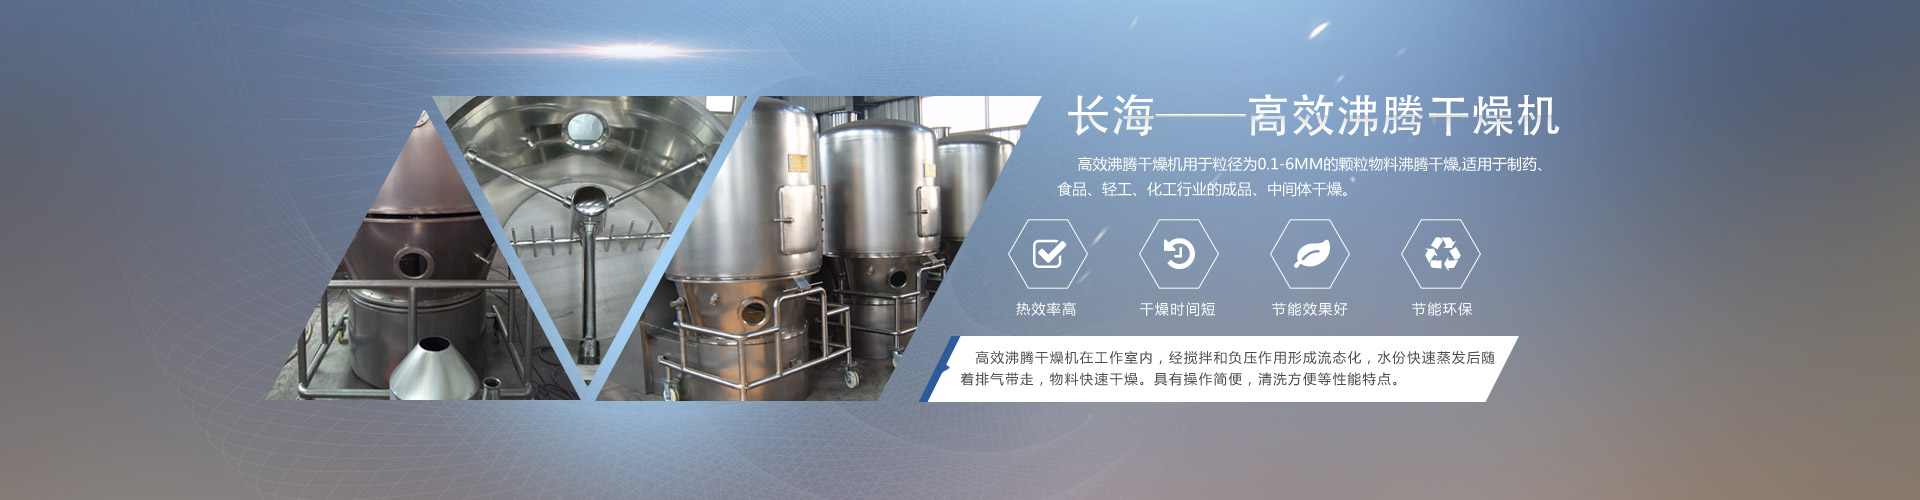 长海干燥专业生产沸腾干燥机